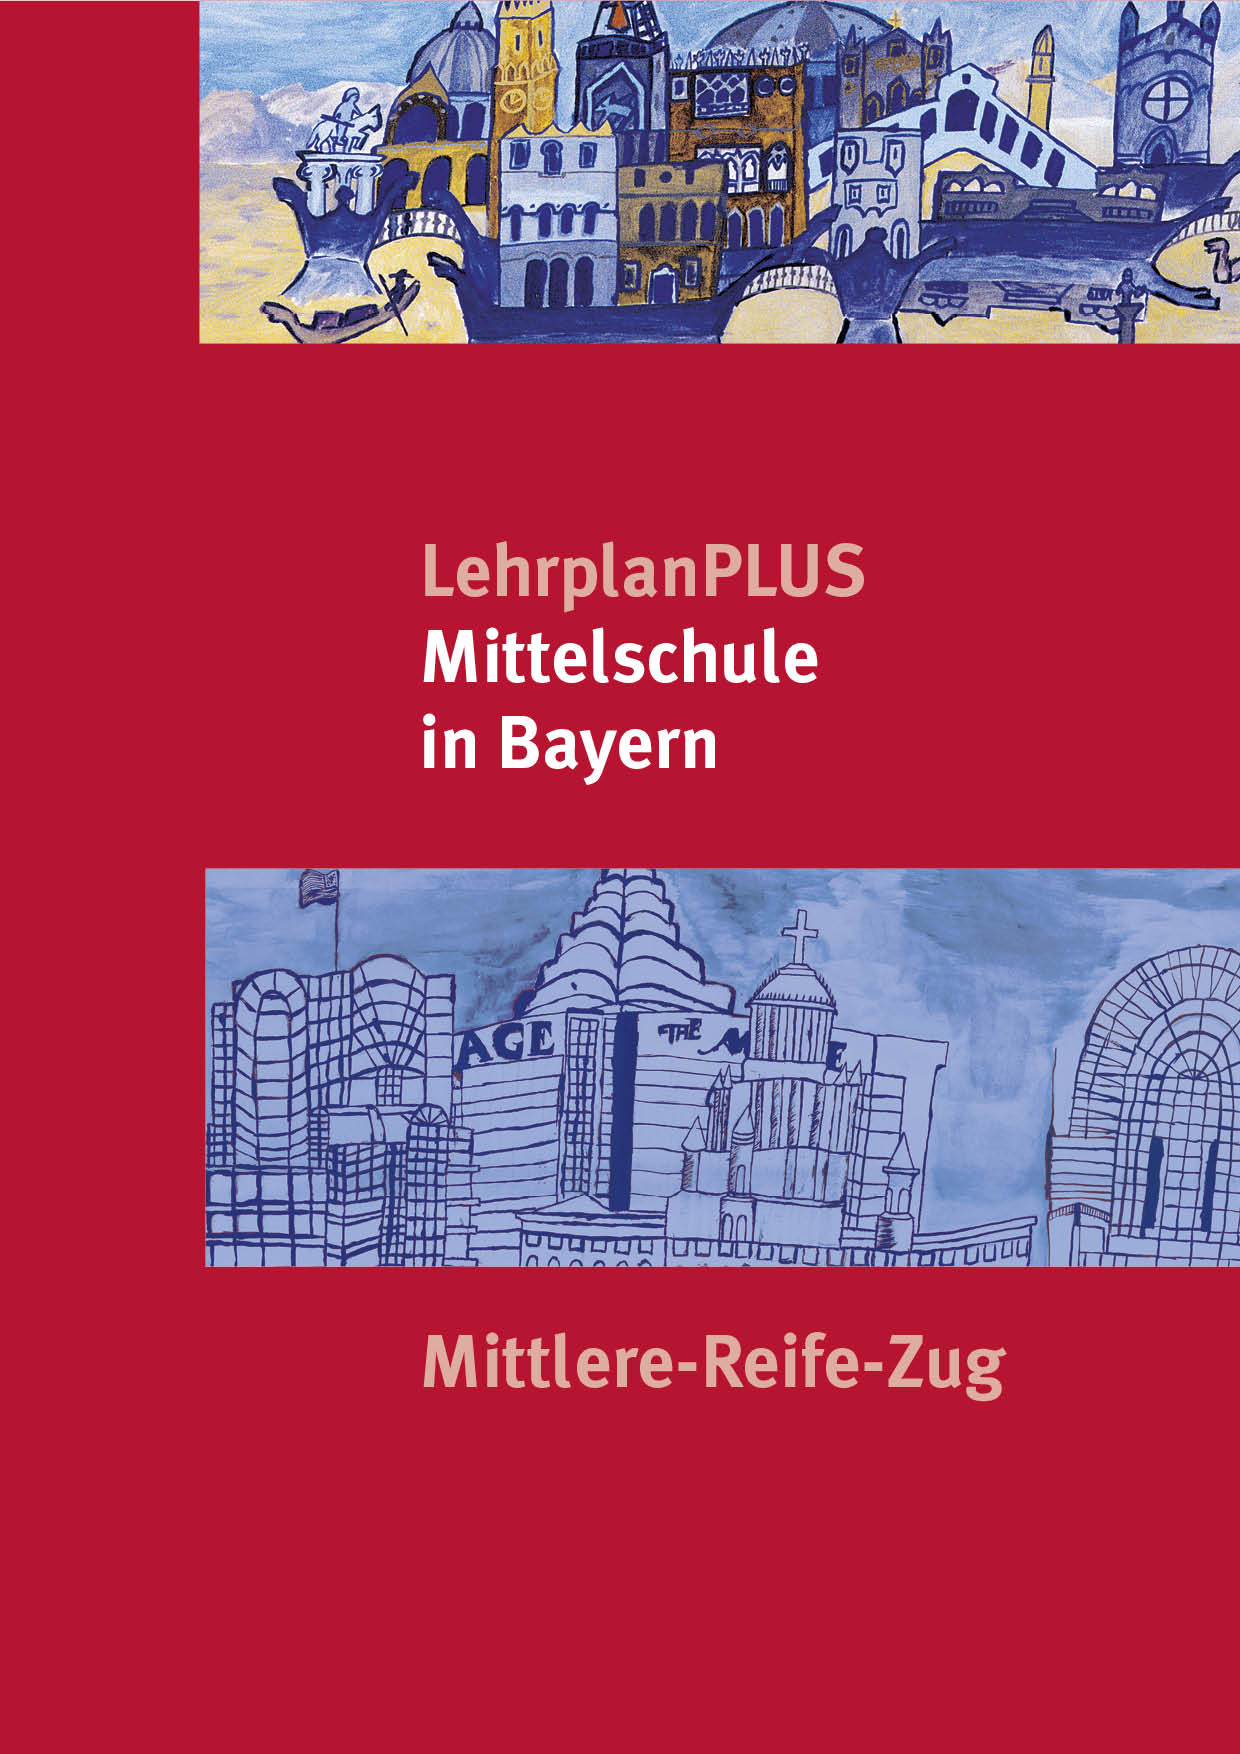 LehrplanPLUS für die Mittelschule M-Zug, 1. Auflage 2017